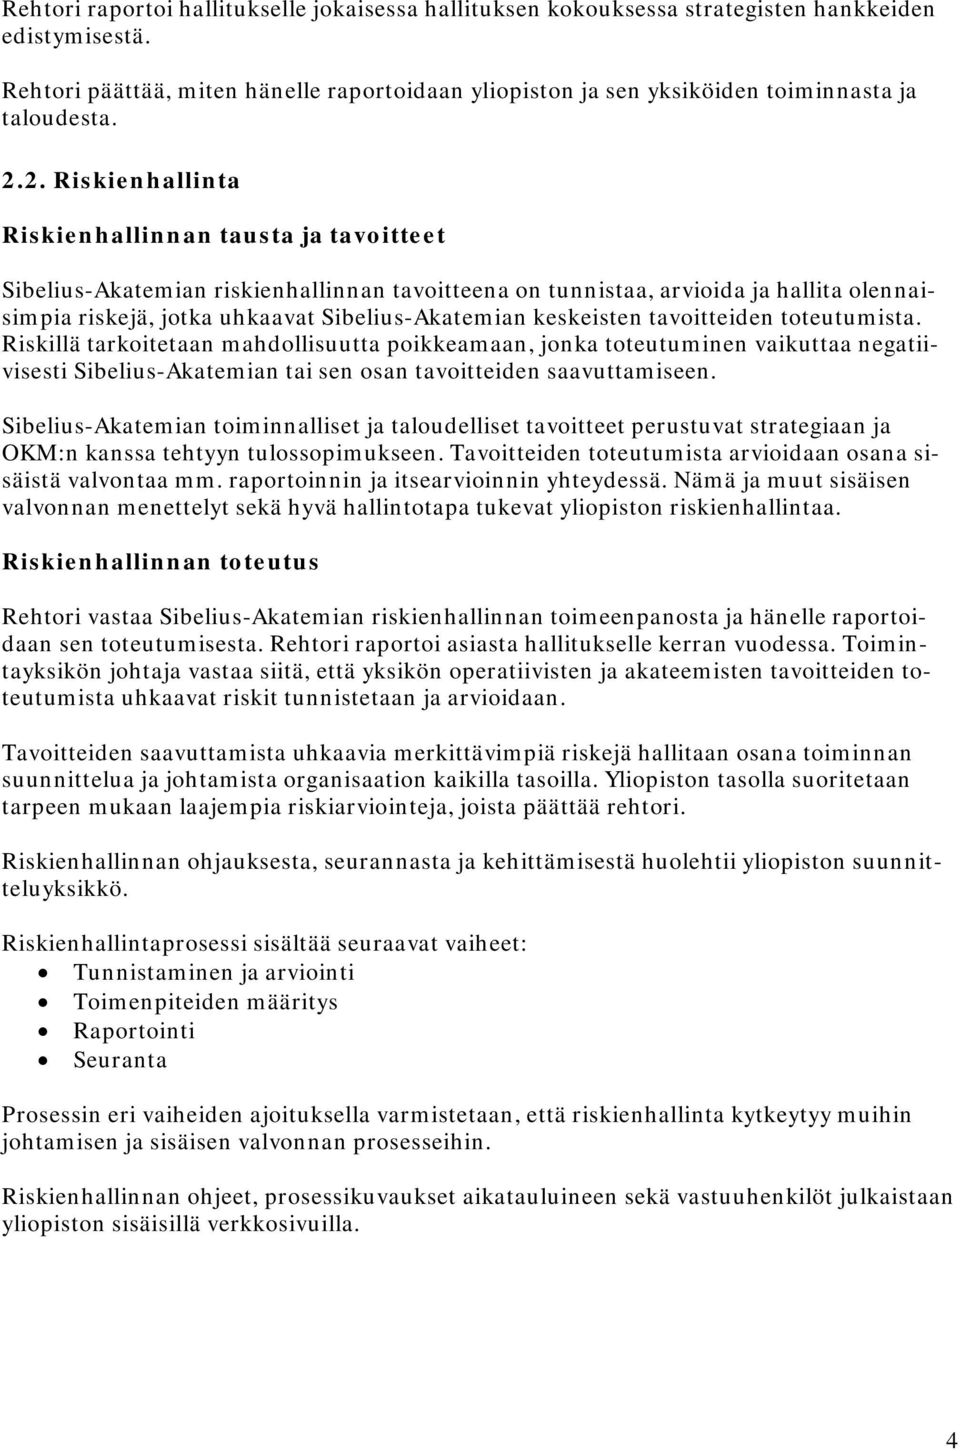 2. Riskienhallinta Riskienhallinnan tausta ja tavoitteet Sibelius-Akatemian riskienhallinnan tavoitteena on tunnistaa, arvioida ja hallita olennaisimpia riskejä, jotka uhkaavat Sibelius-Akatemian